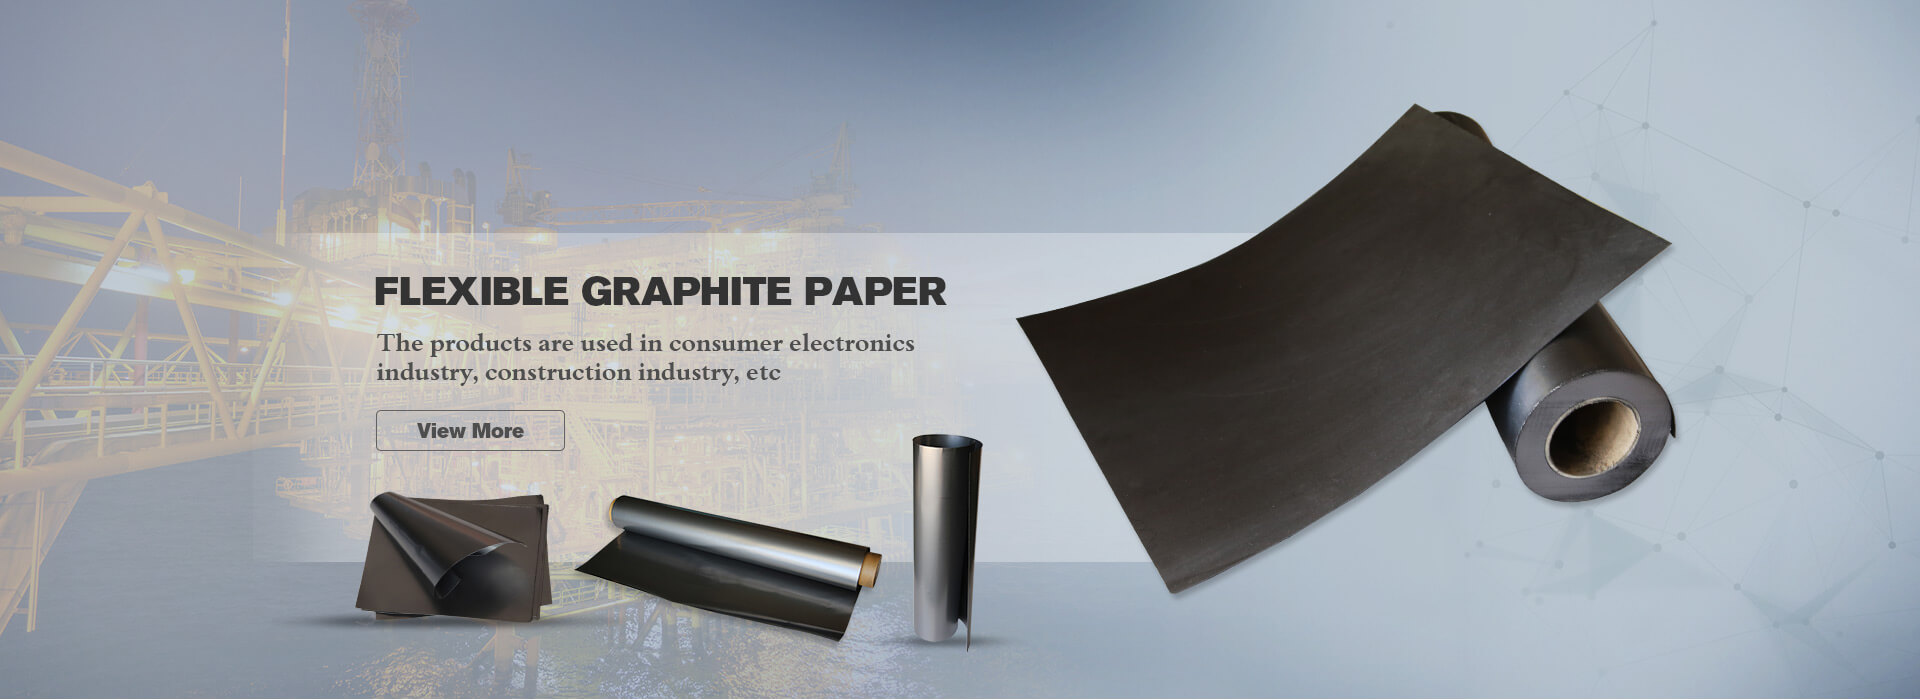 Flexible Graphite Paper